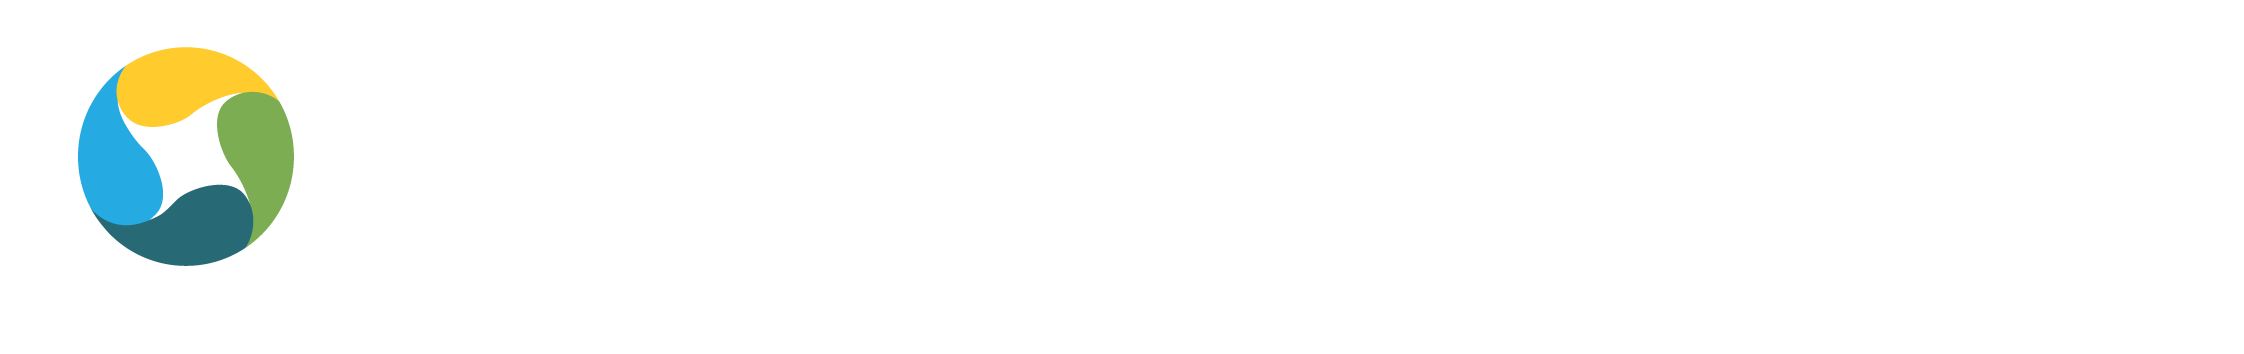 logo for McInnes Group